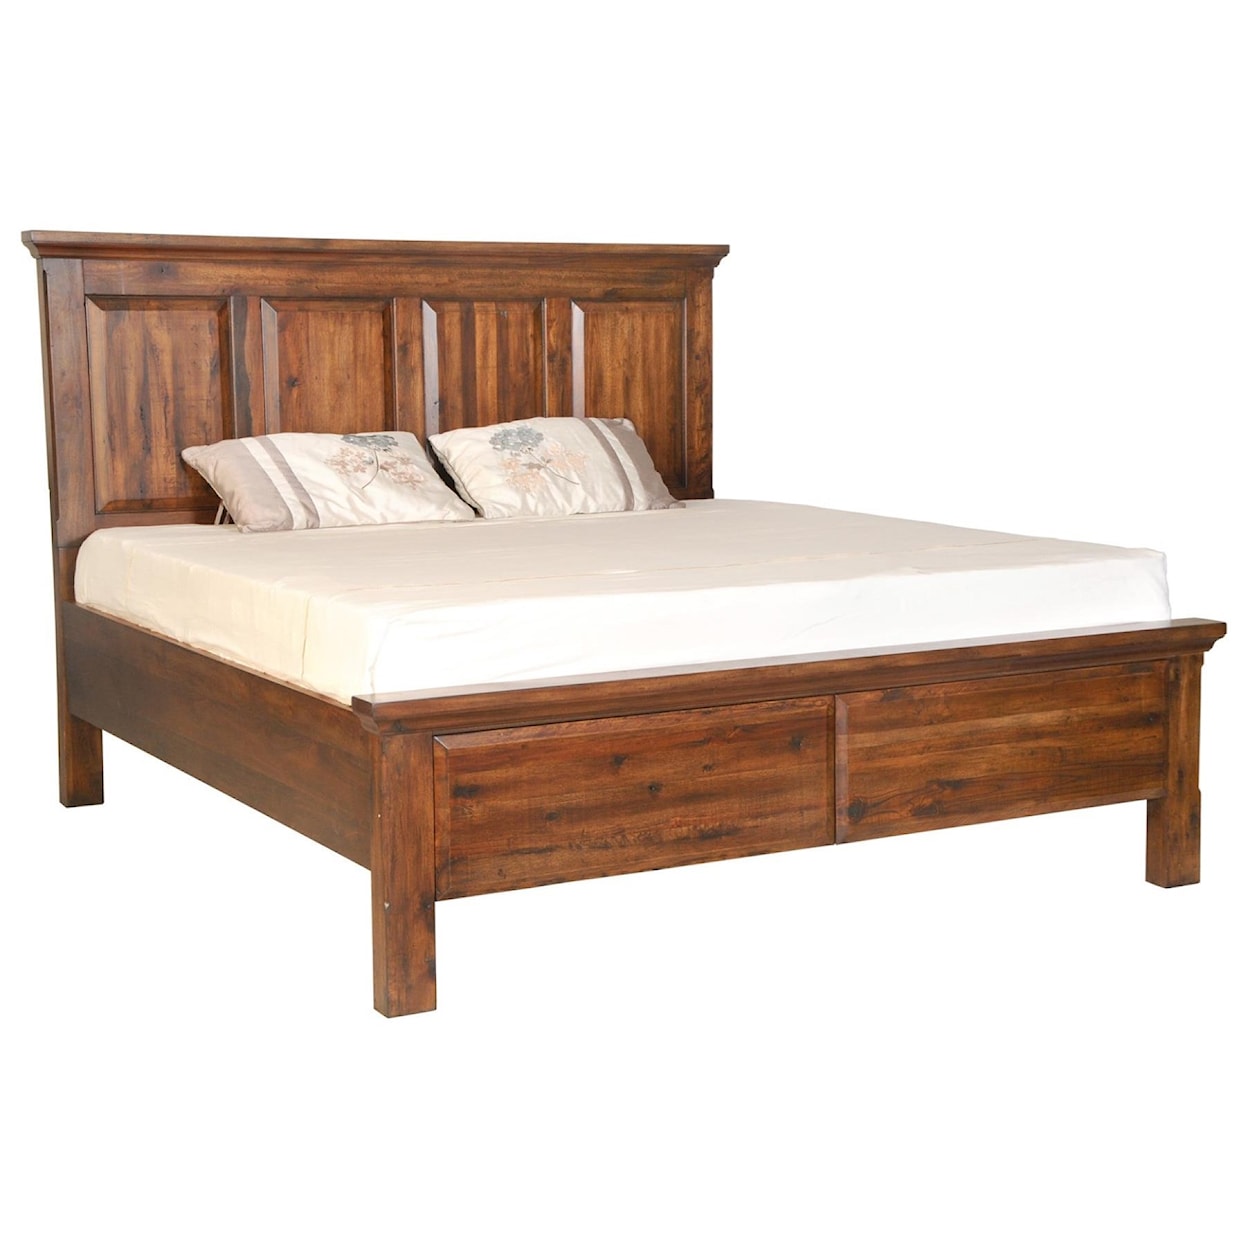 Virginia Furniture Market Solid Wood Durham Queen Storage Bed